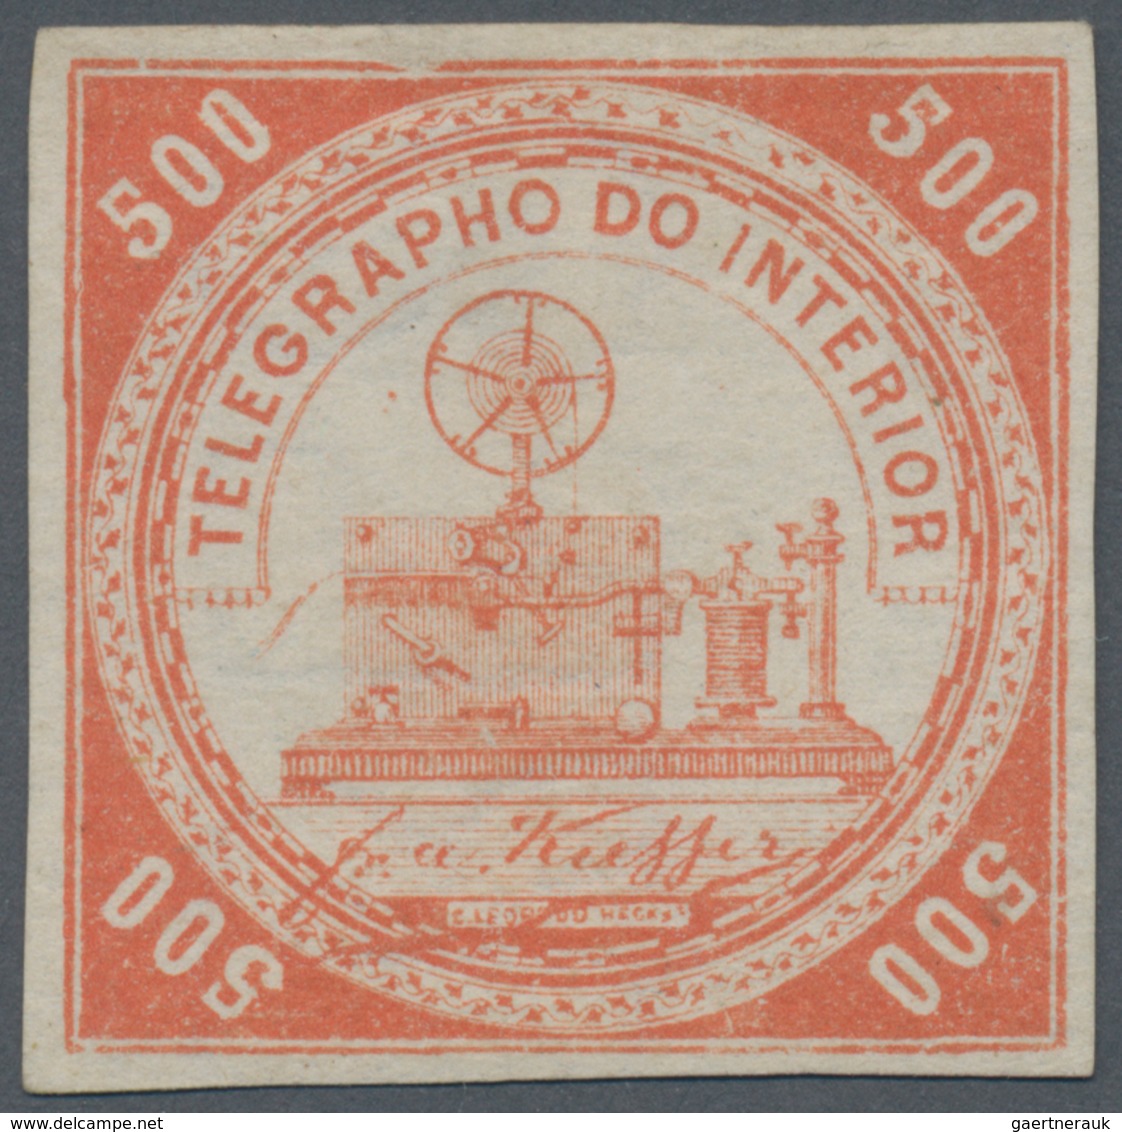 Brasilien - Telegrafenmarken: 1873, Telegrapho Do Interior, 500 Reis Vermilion With Very Rare Wmk "L - Telegraphenmarken